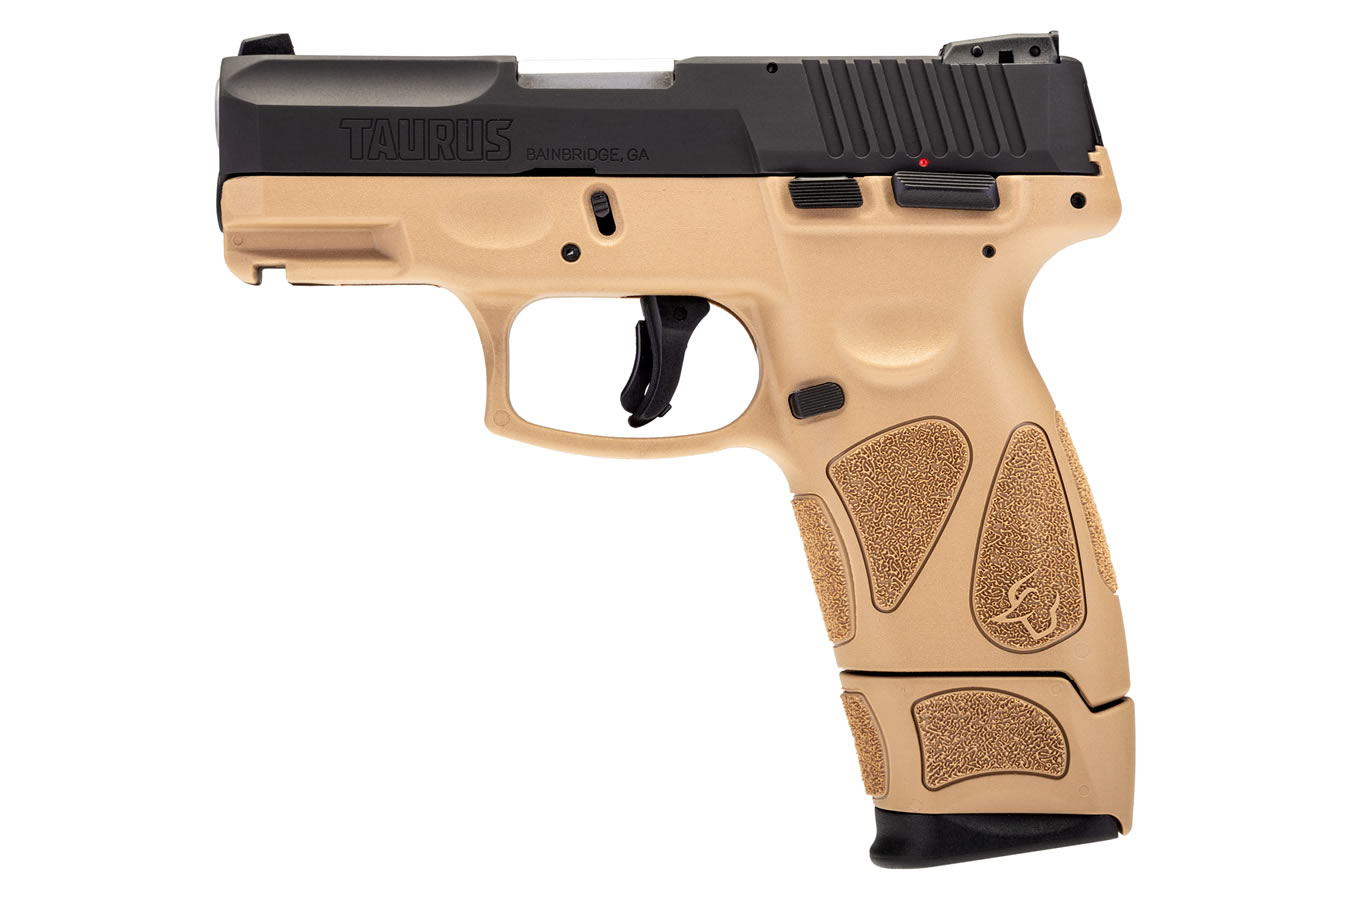 taurus-g2c-9mm-black-tan-pistol-with-17-round-magazine-sportsman-s